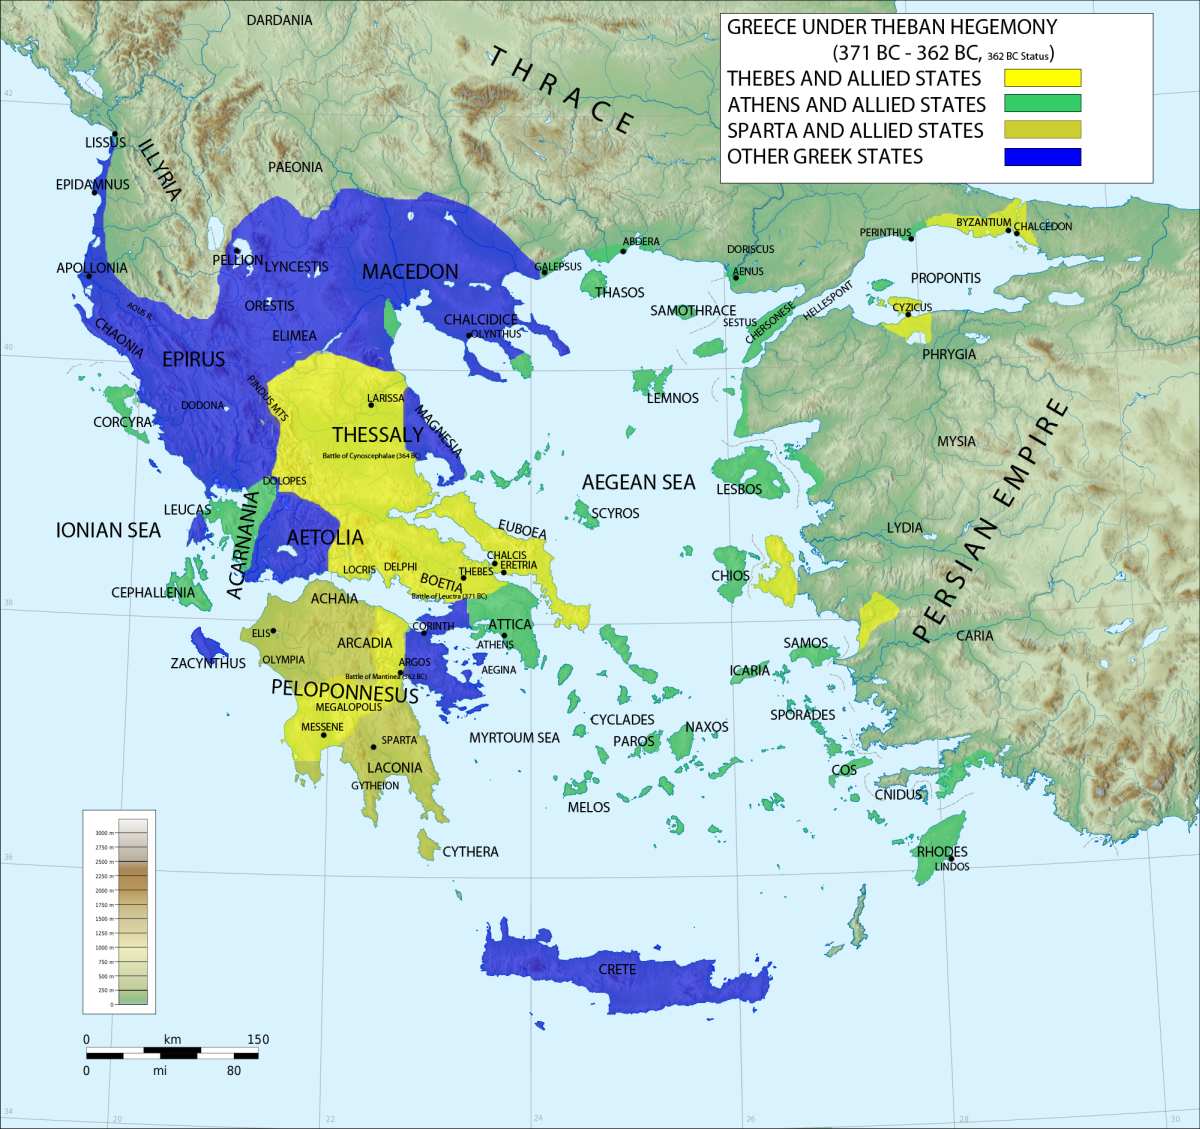 Grecia antică sub hegemonia Tebei